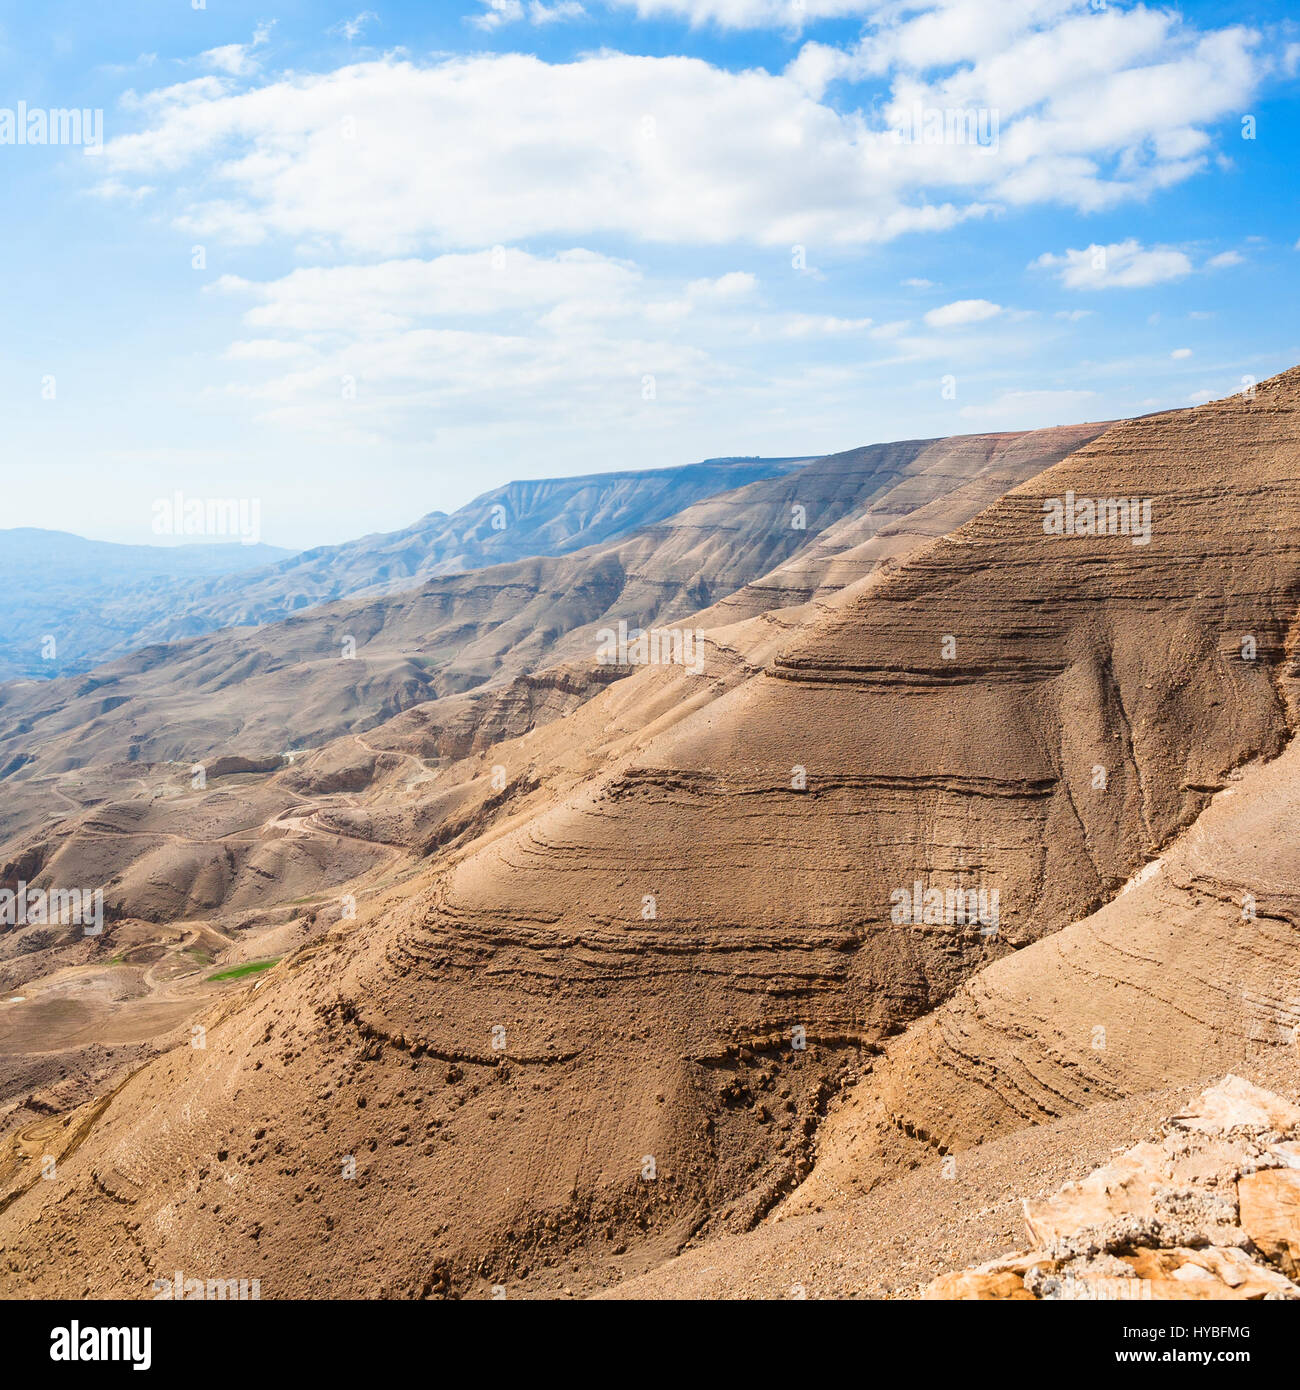 Reisen Sie nach Nahost Land Jordanien - braunen Berge im Tal des Wadi Mujib River (Fluss Arnon) auf alten Königs Highway in der Nähe von Dhiban Stockfoto